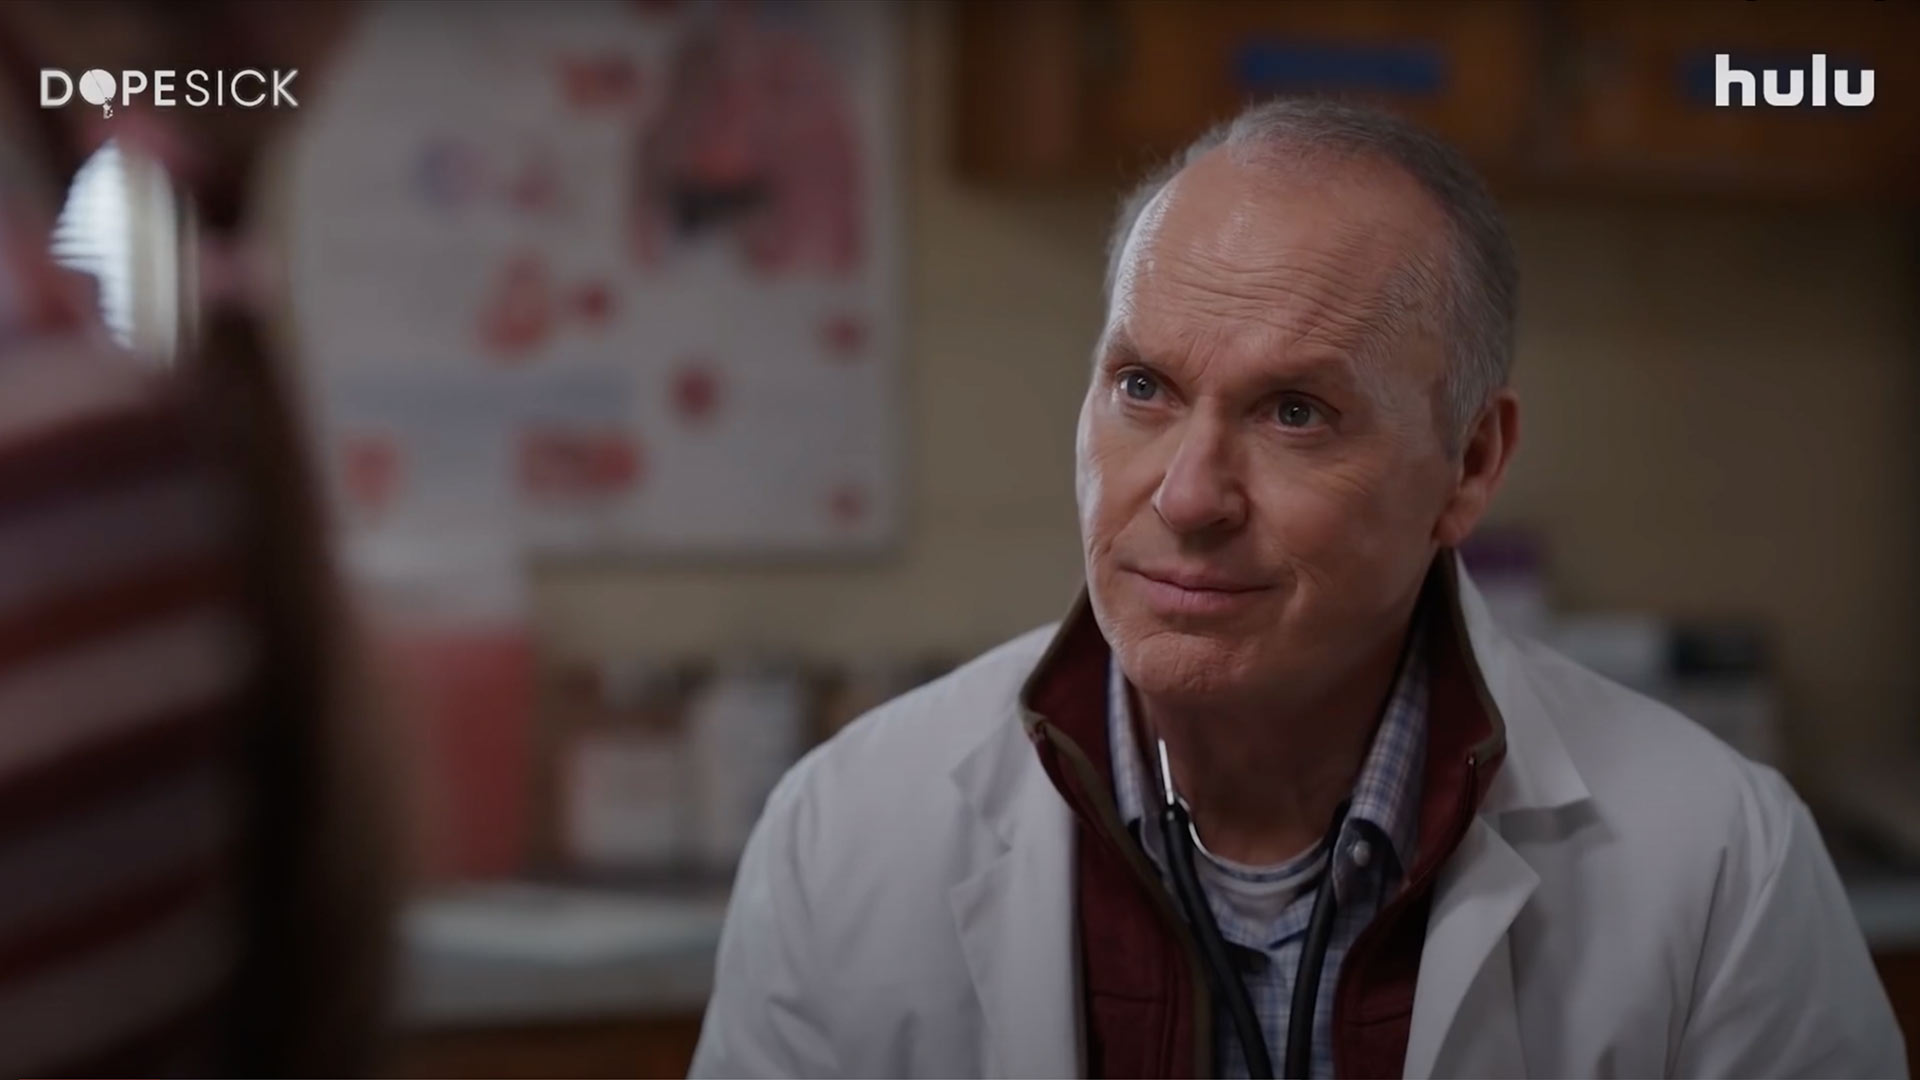 Dopesick : Michael Keaton en pleine crise des opioïdes dans le trailer